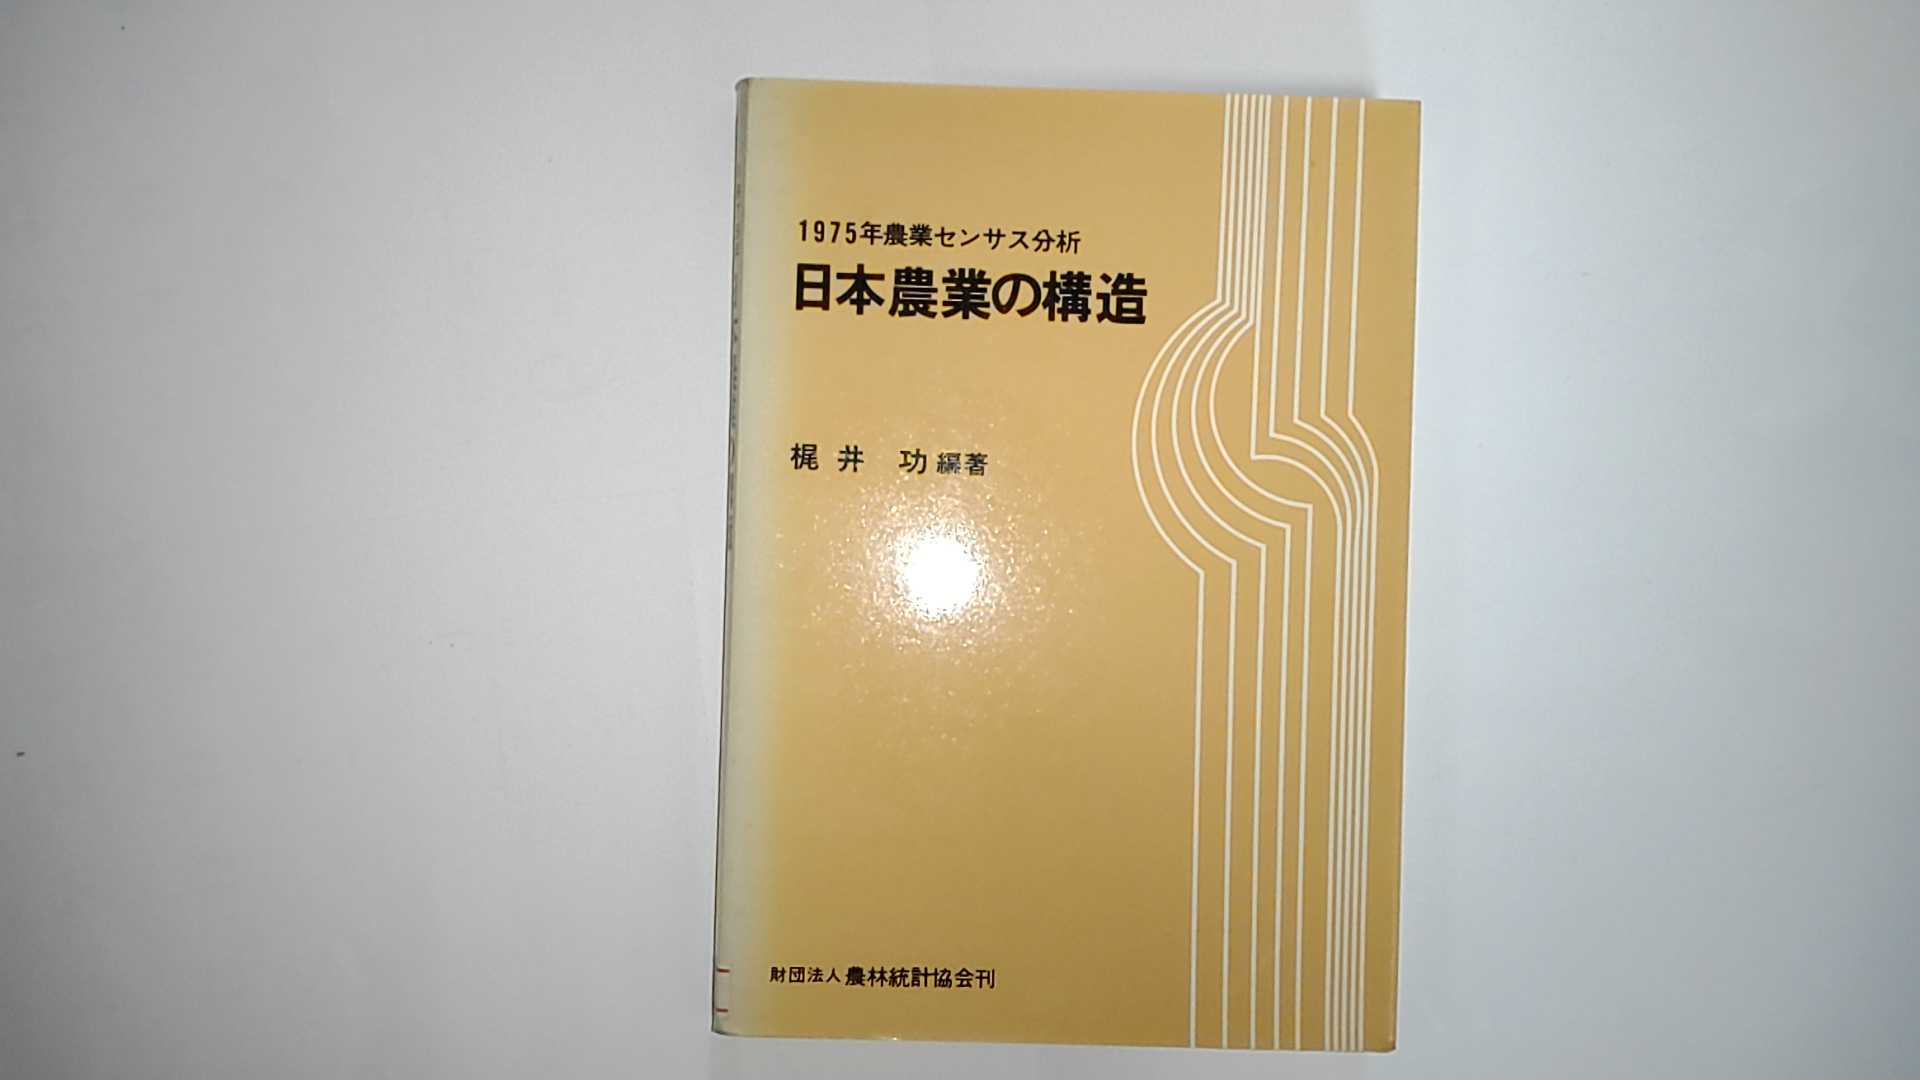 日本農業の構造 1975年農業センサス分析 即納 《農林統計協会刊》 上等な